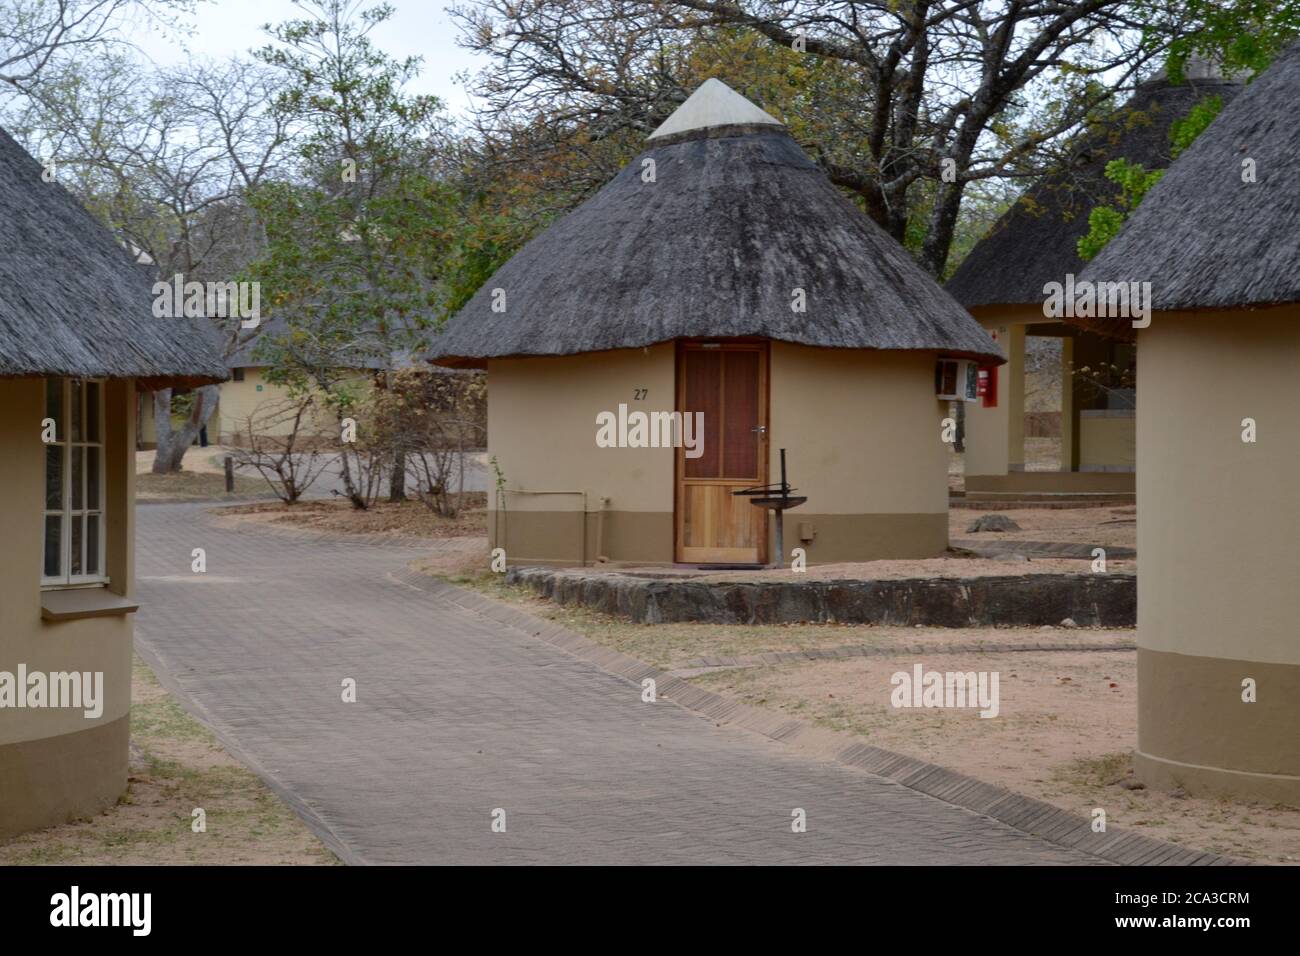 Rangées de petites huttes traditionnelles de toit de chaume à Pretoriouskop Camp de repos dans la réserve de gibier du parc national Kruger dans le Sud Afrique Banque D'Images